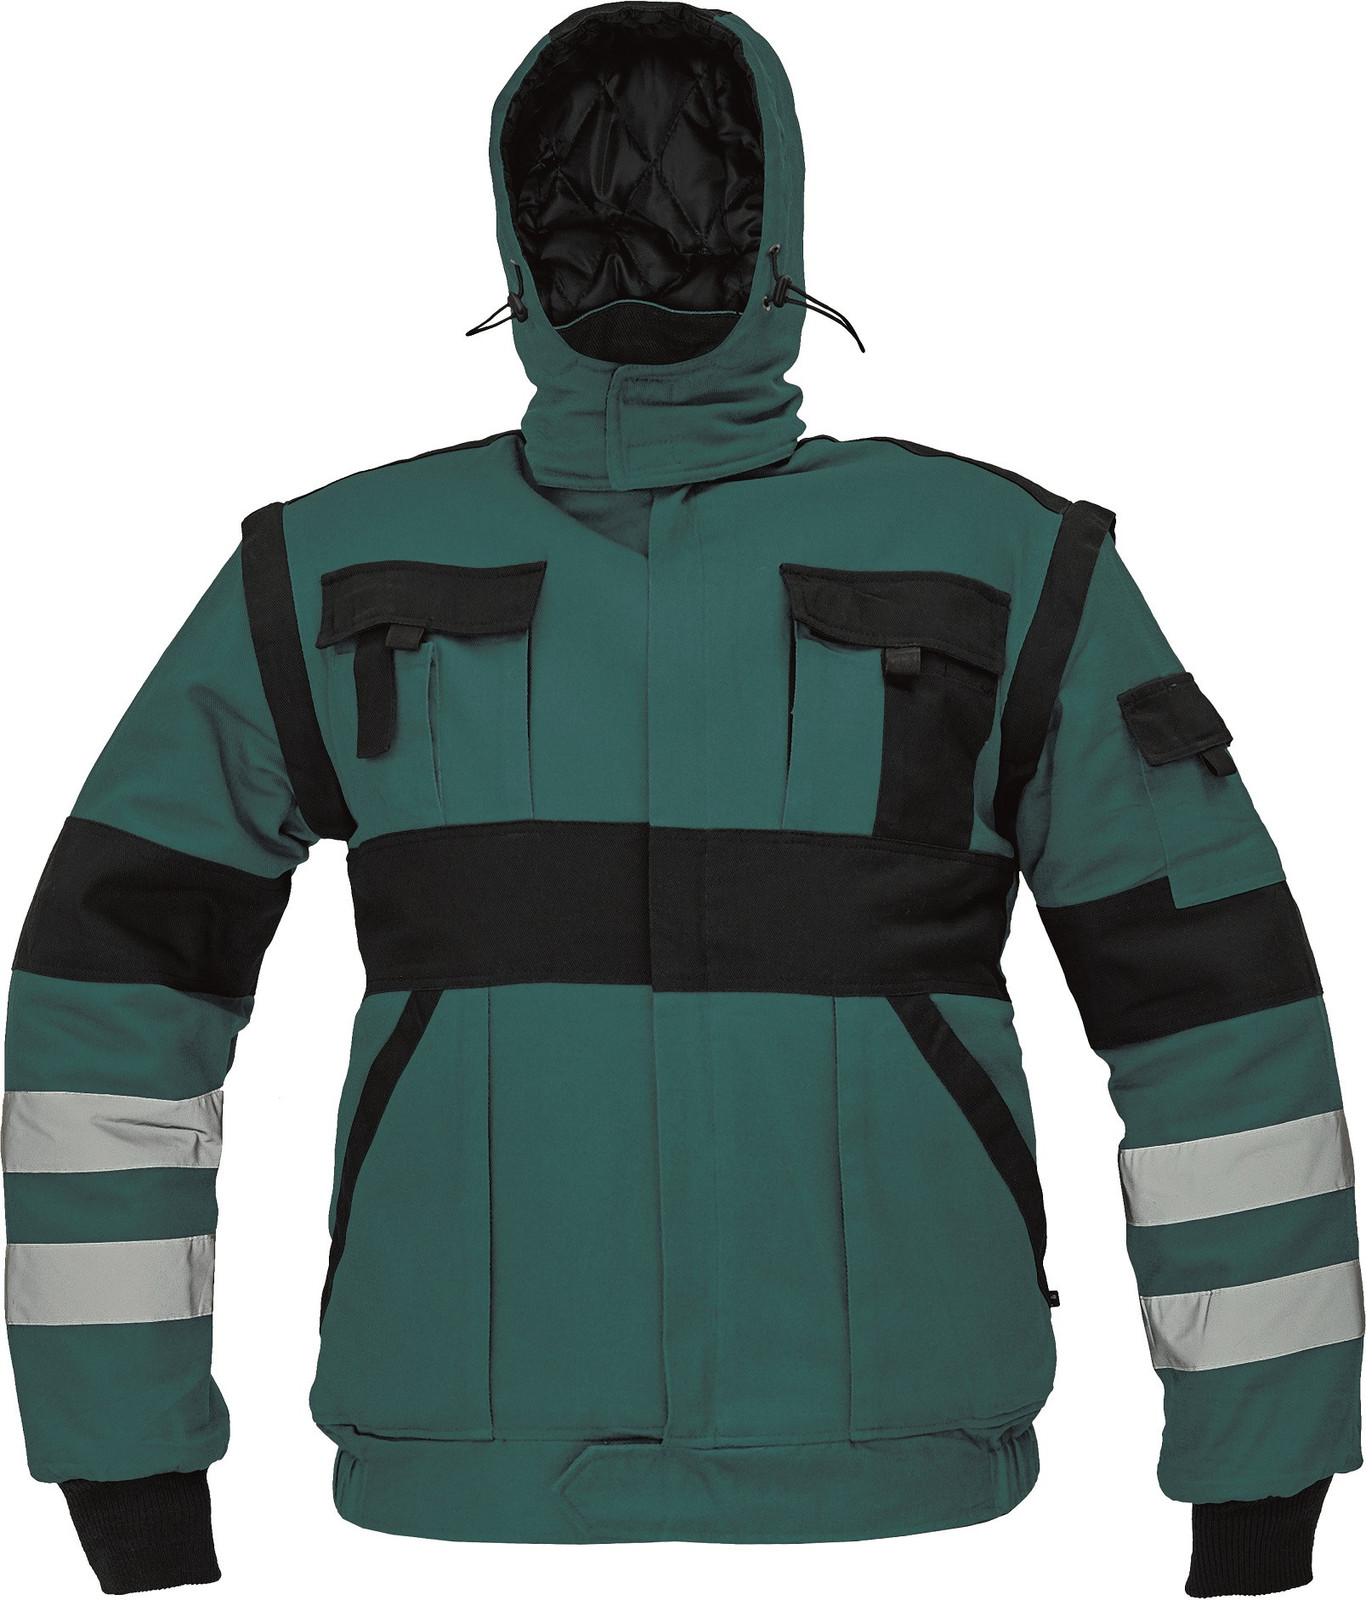 Zateplená montérková bunda Max Winter s reflexnými pruhmi 2v1 - veľkosť: 50, farba: zelená/čierna